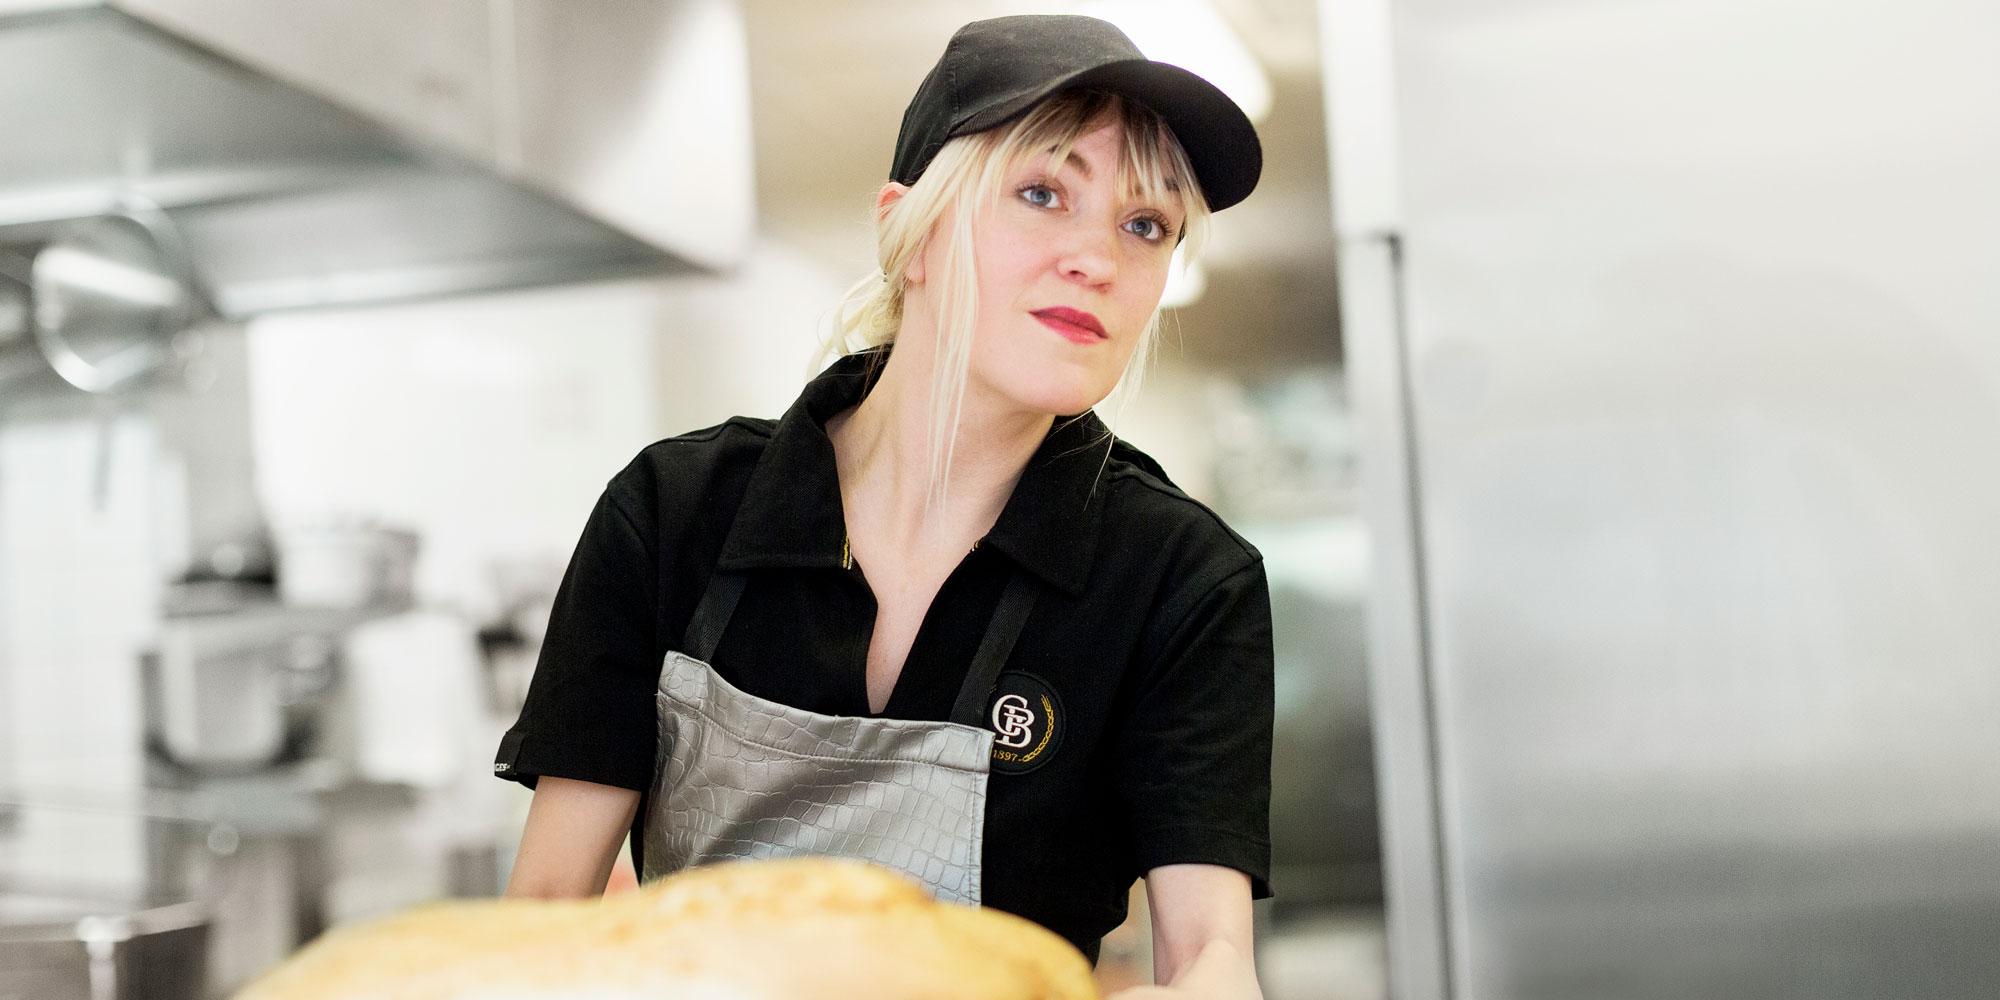 Blond kvinna i arbetsskjorta och keps lyfter ett bröd, i storköksmiljö.